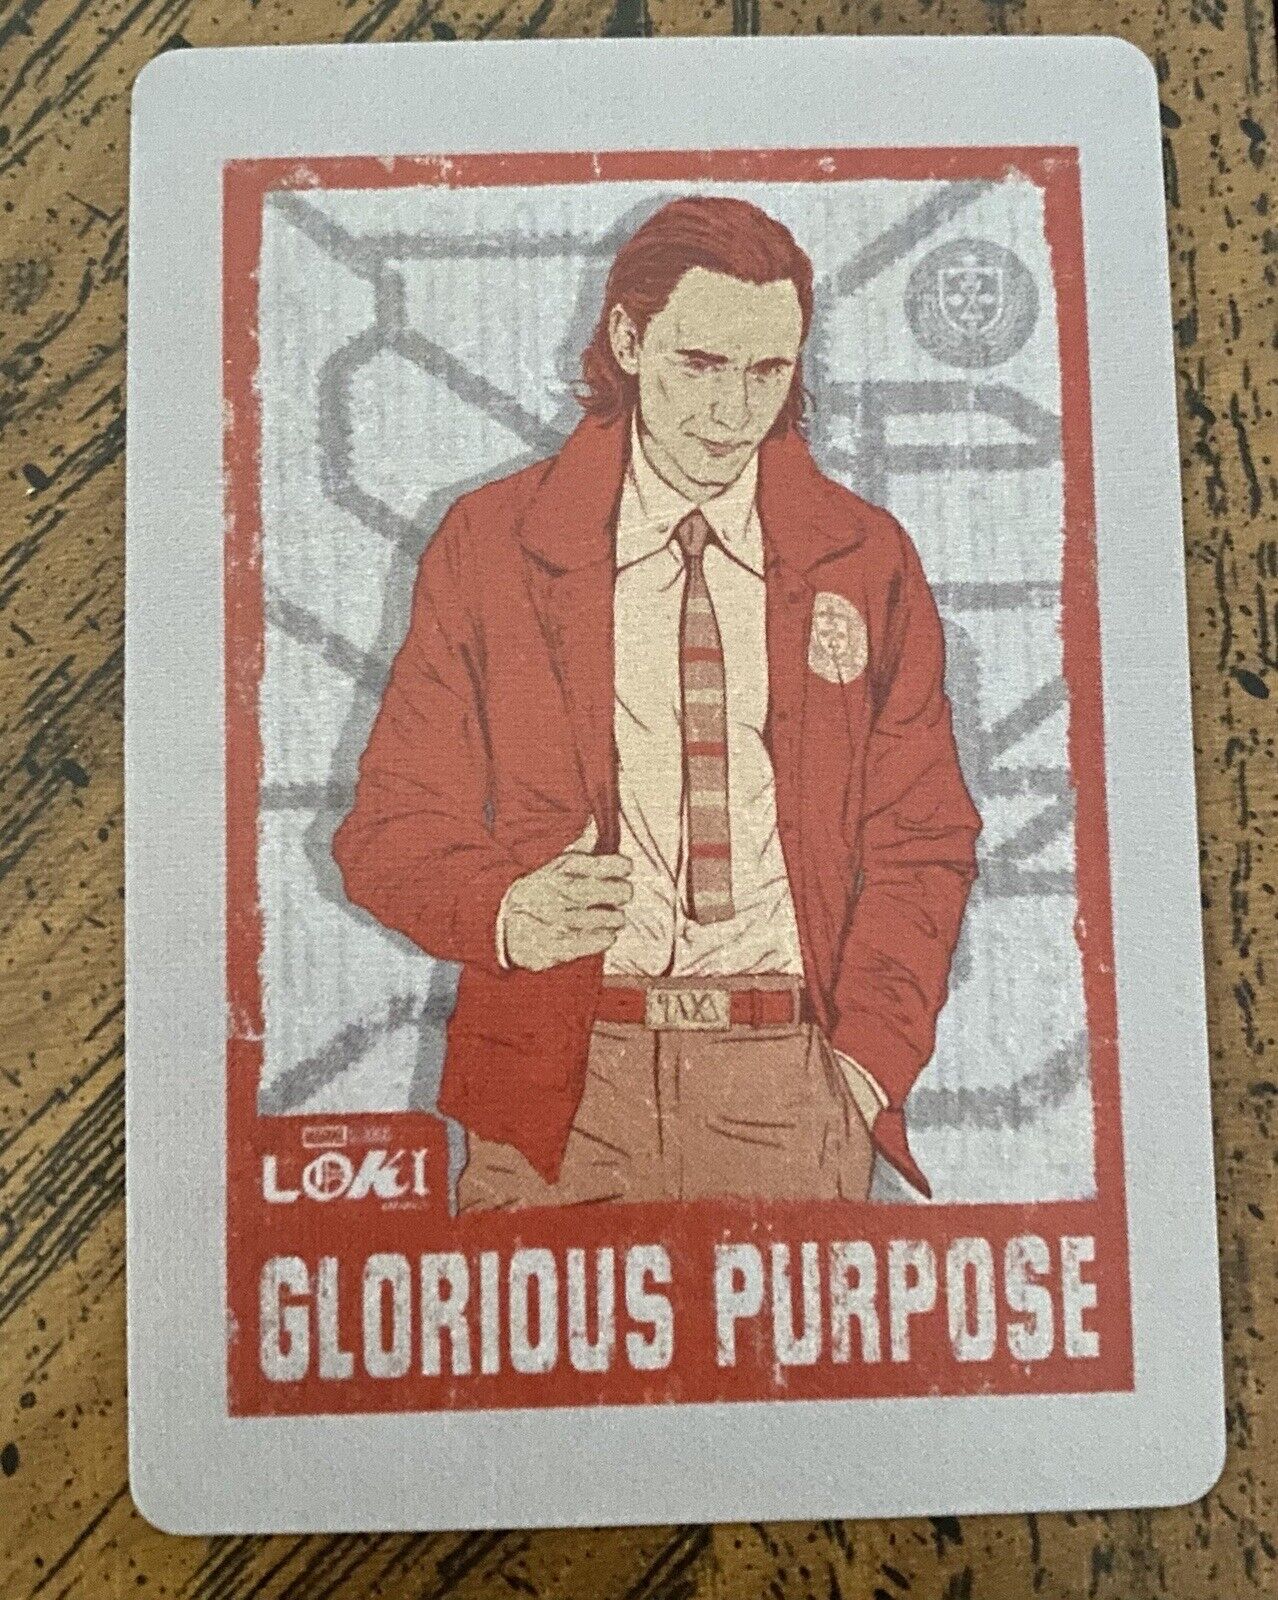 2021 Loki Glorious Purpose Set Of Bicycle Poker Playing Cards Tom Hiddleston